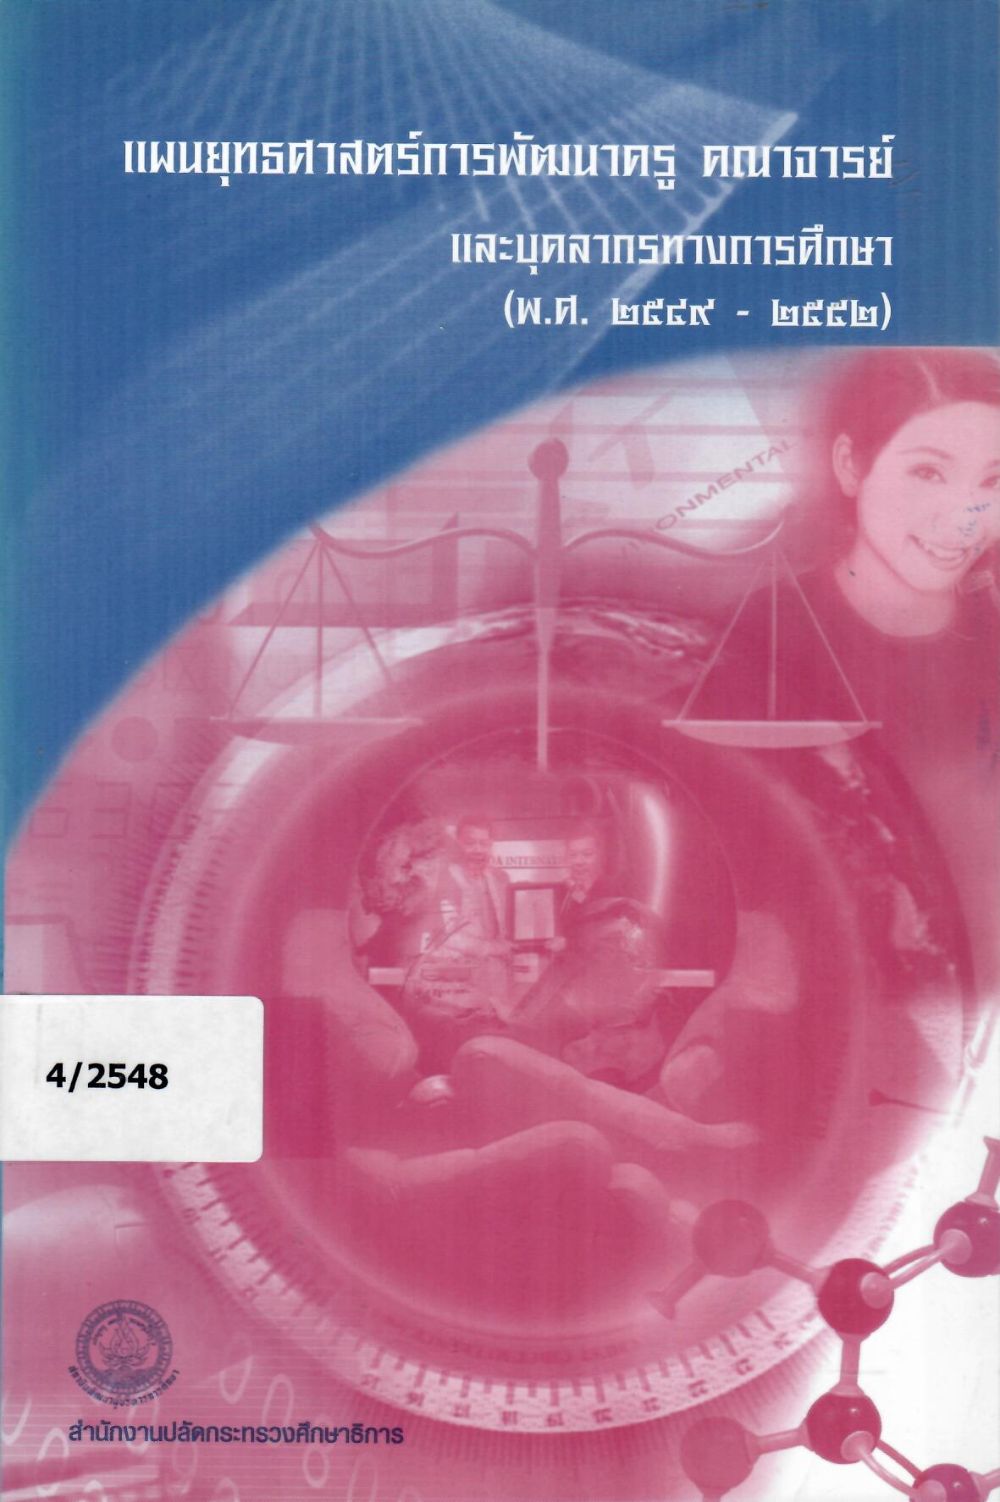 แผนยุทธศาสตร์การพัฒนาครู คณาจารย์ และบุคลากรทางการศึกษา (พ.ศ. 2549-2552)/ สถาบันพัฒนาผู้บริหารการศึกษา สำนักงานปลัดกระทรวงศึกษาธิการ